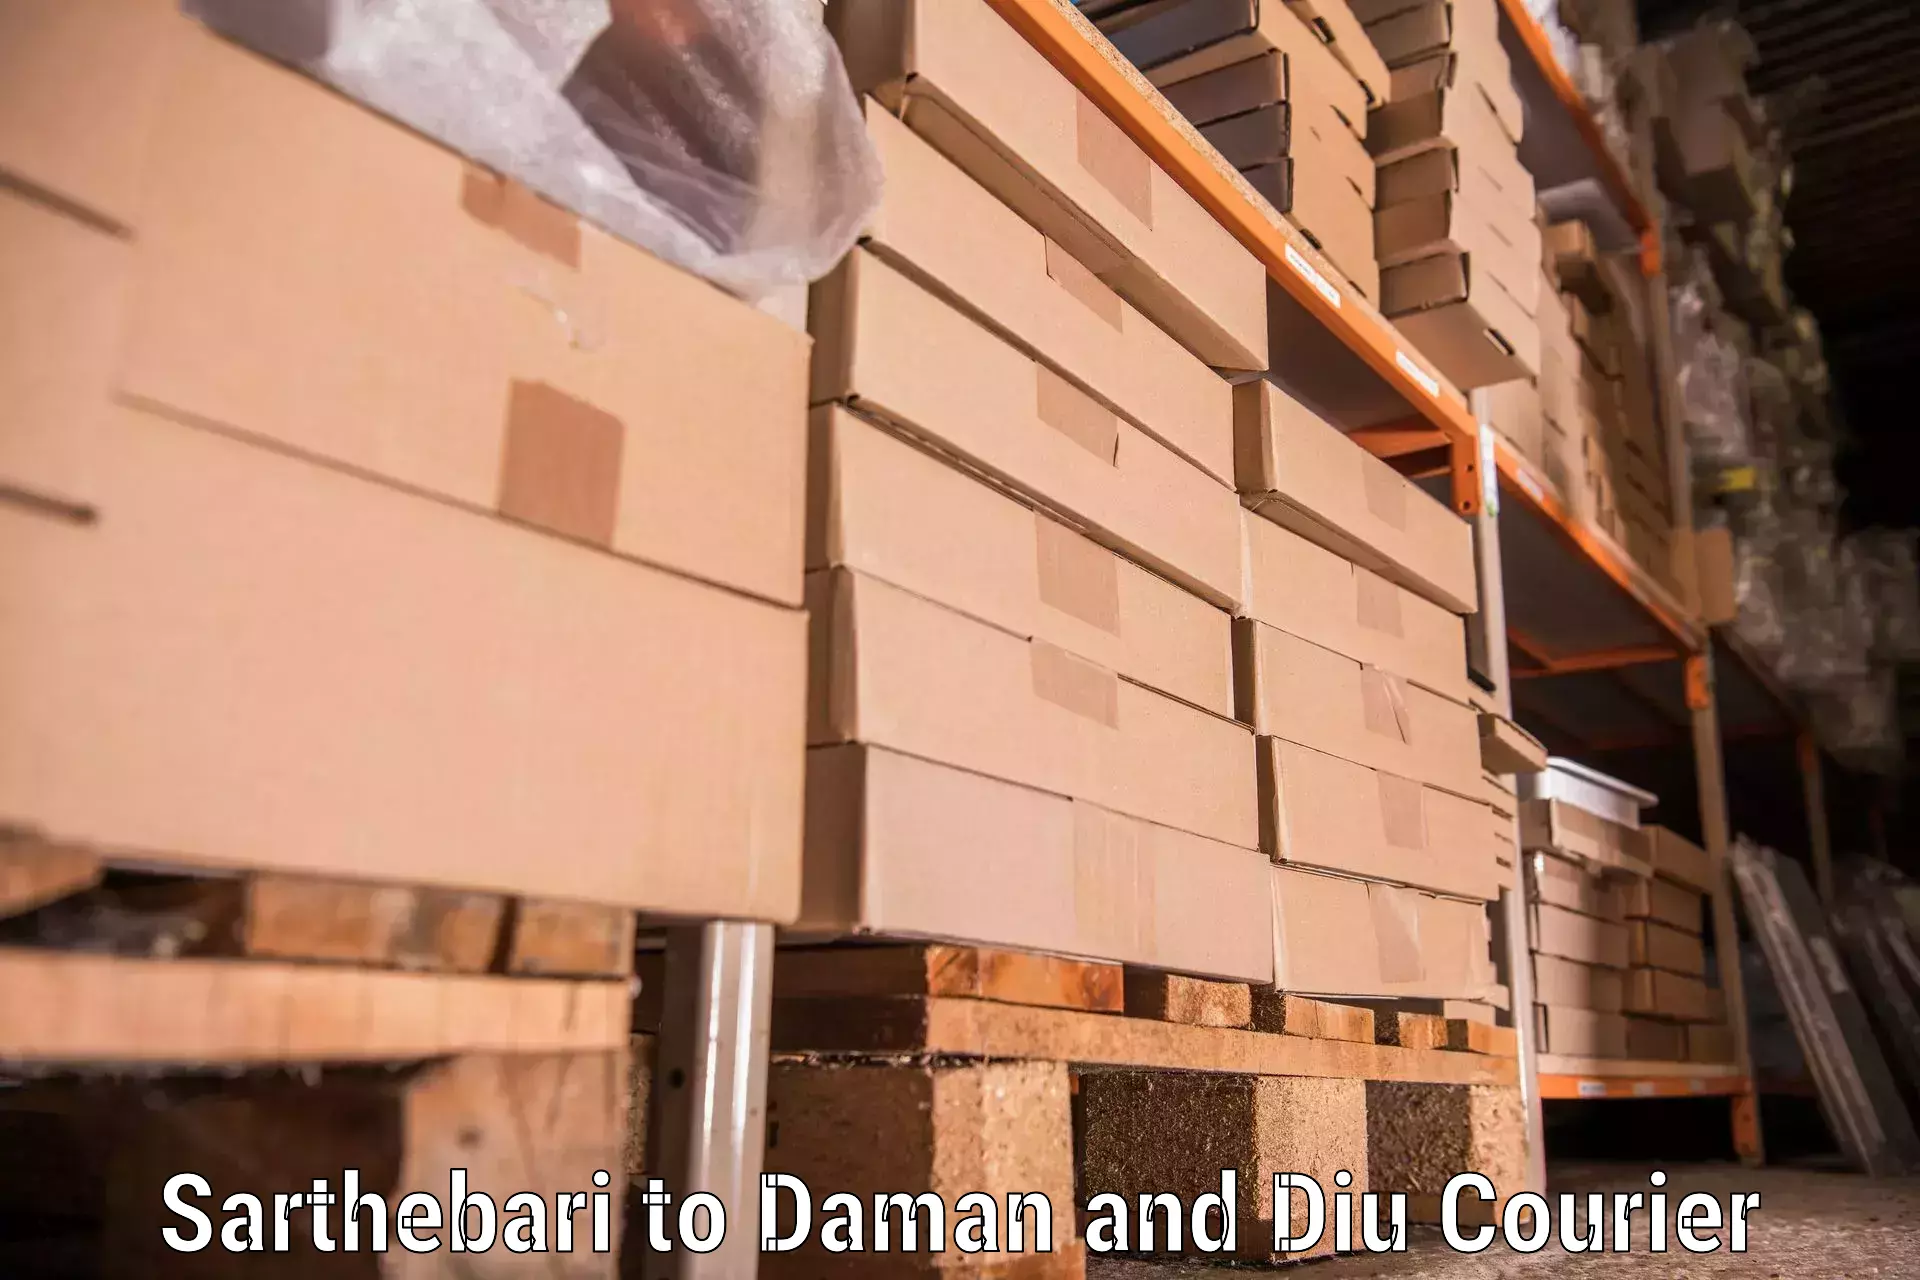 Furniture moving services Sarthebari to Daman and Diu